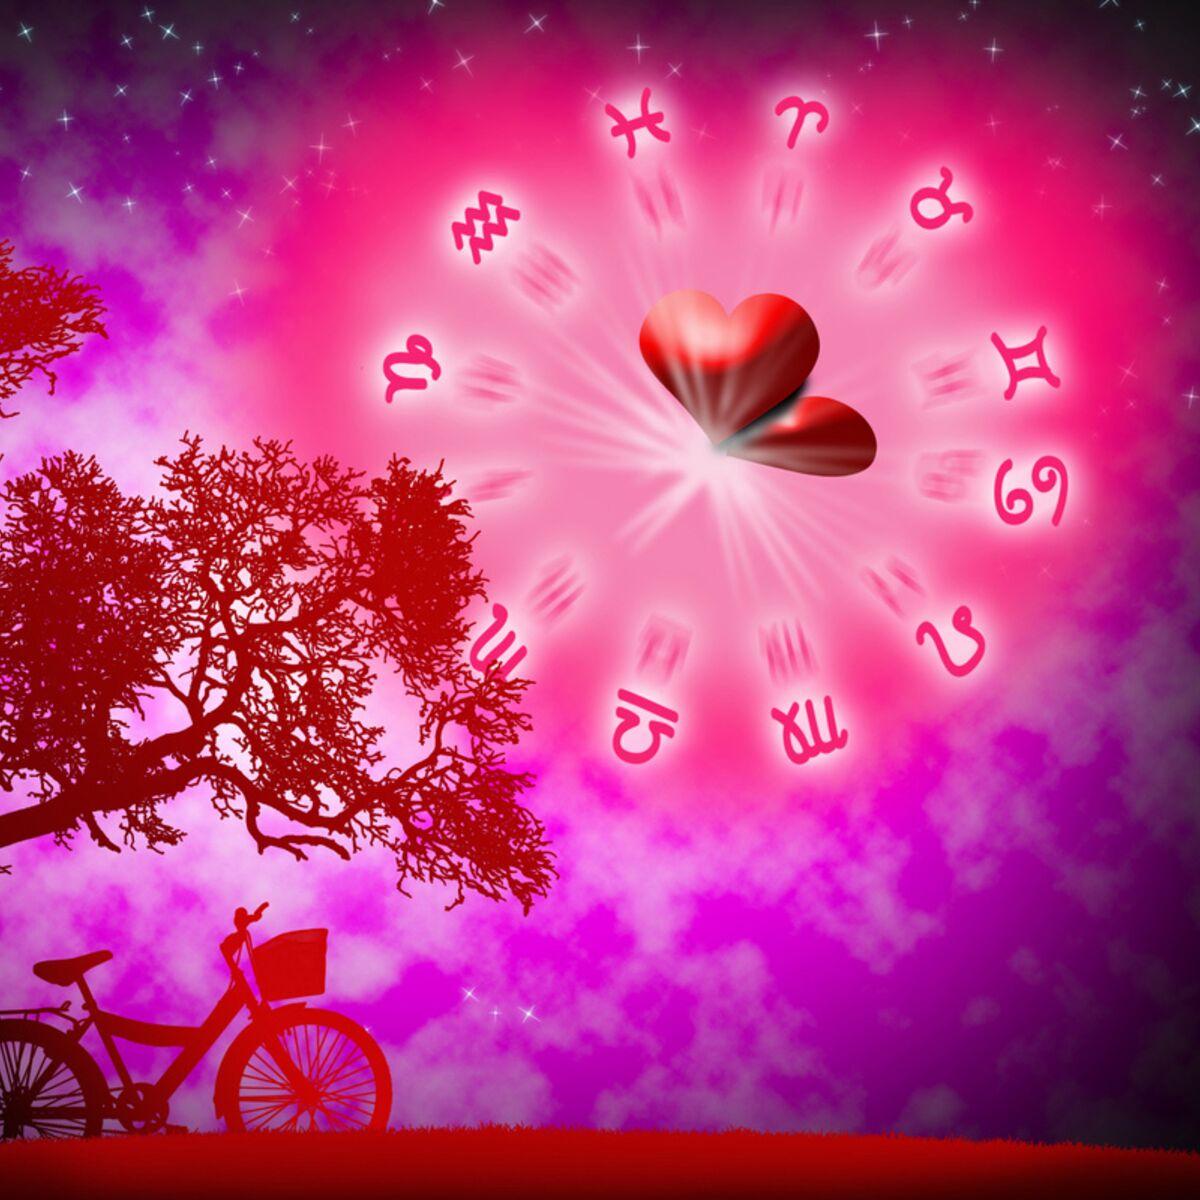 Oracle de l'amour, le jeu divinatoire pour prédire votre avenir